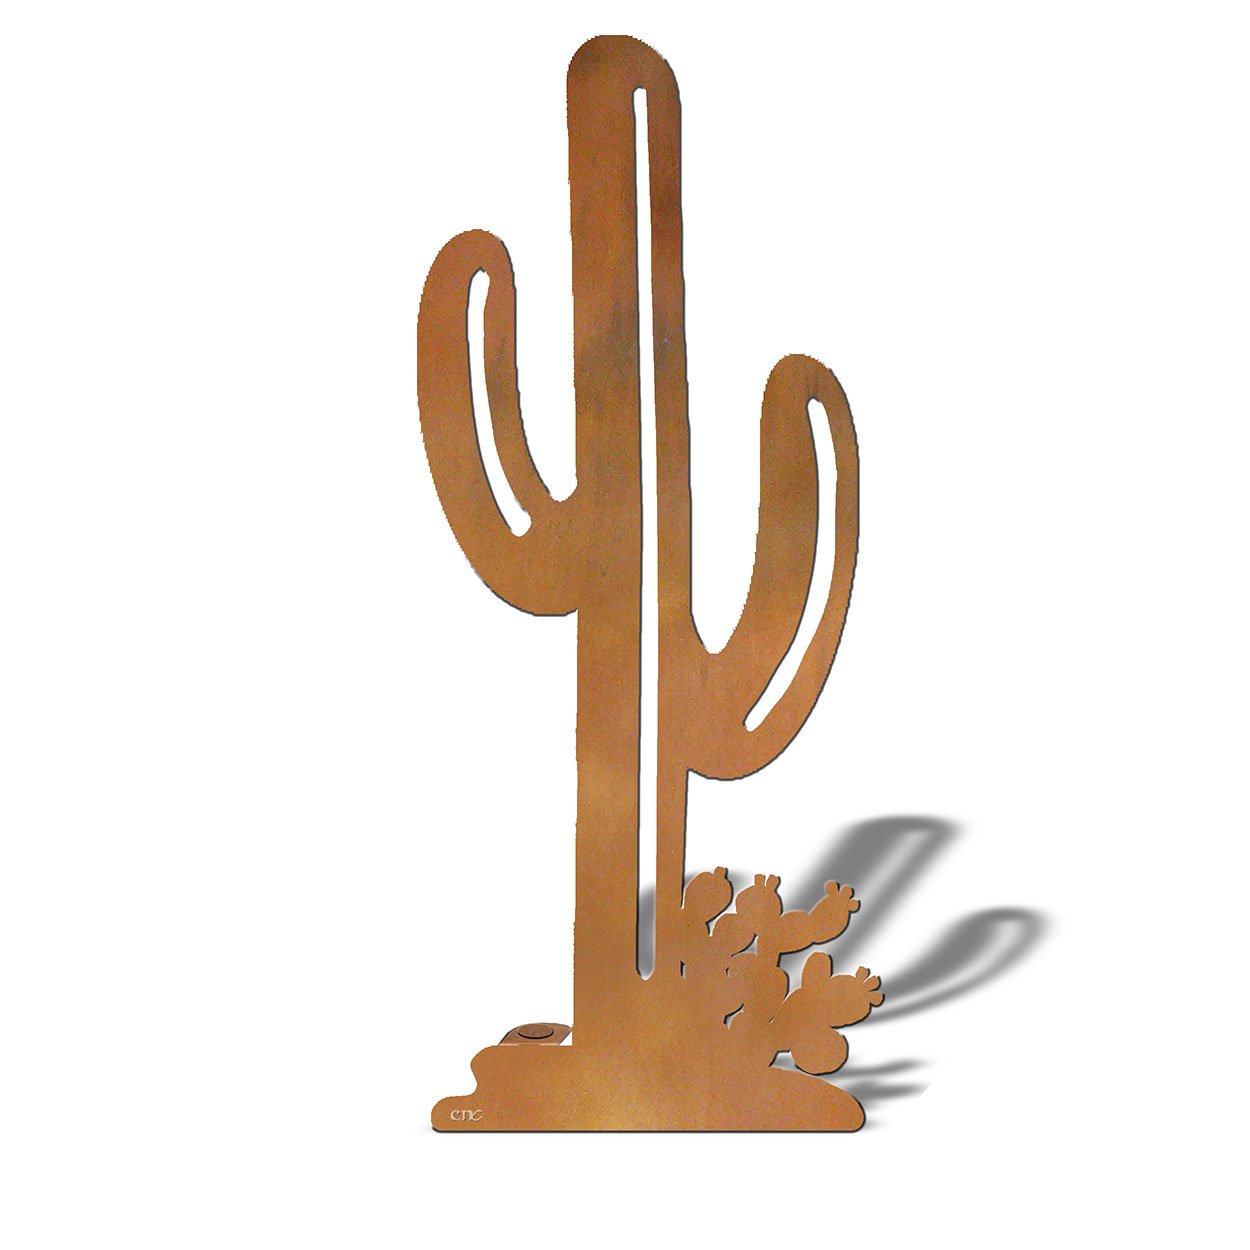 603408 - Cactus Small Rust Metal Garden Sculpture